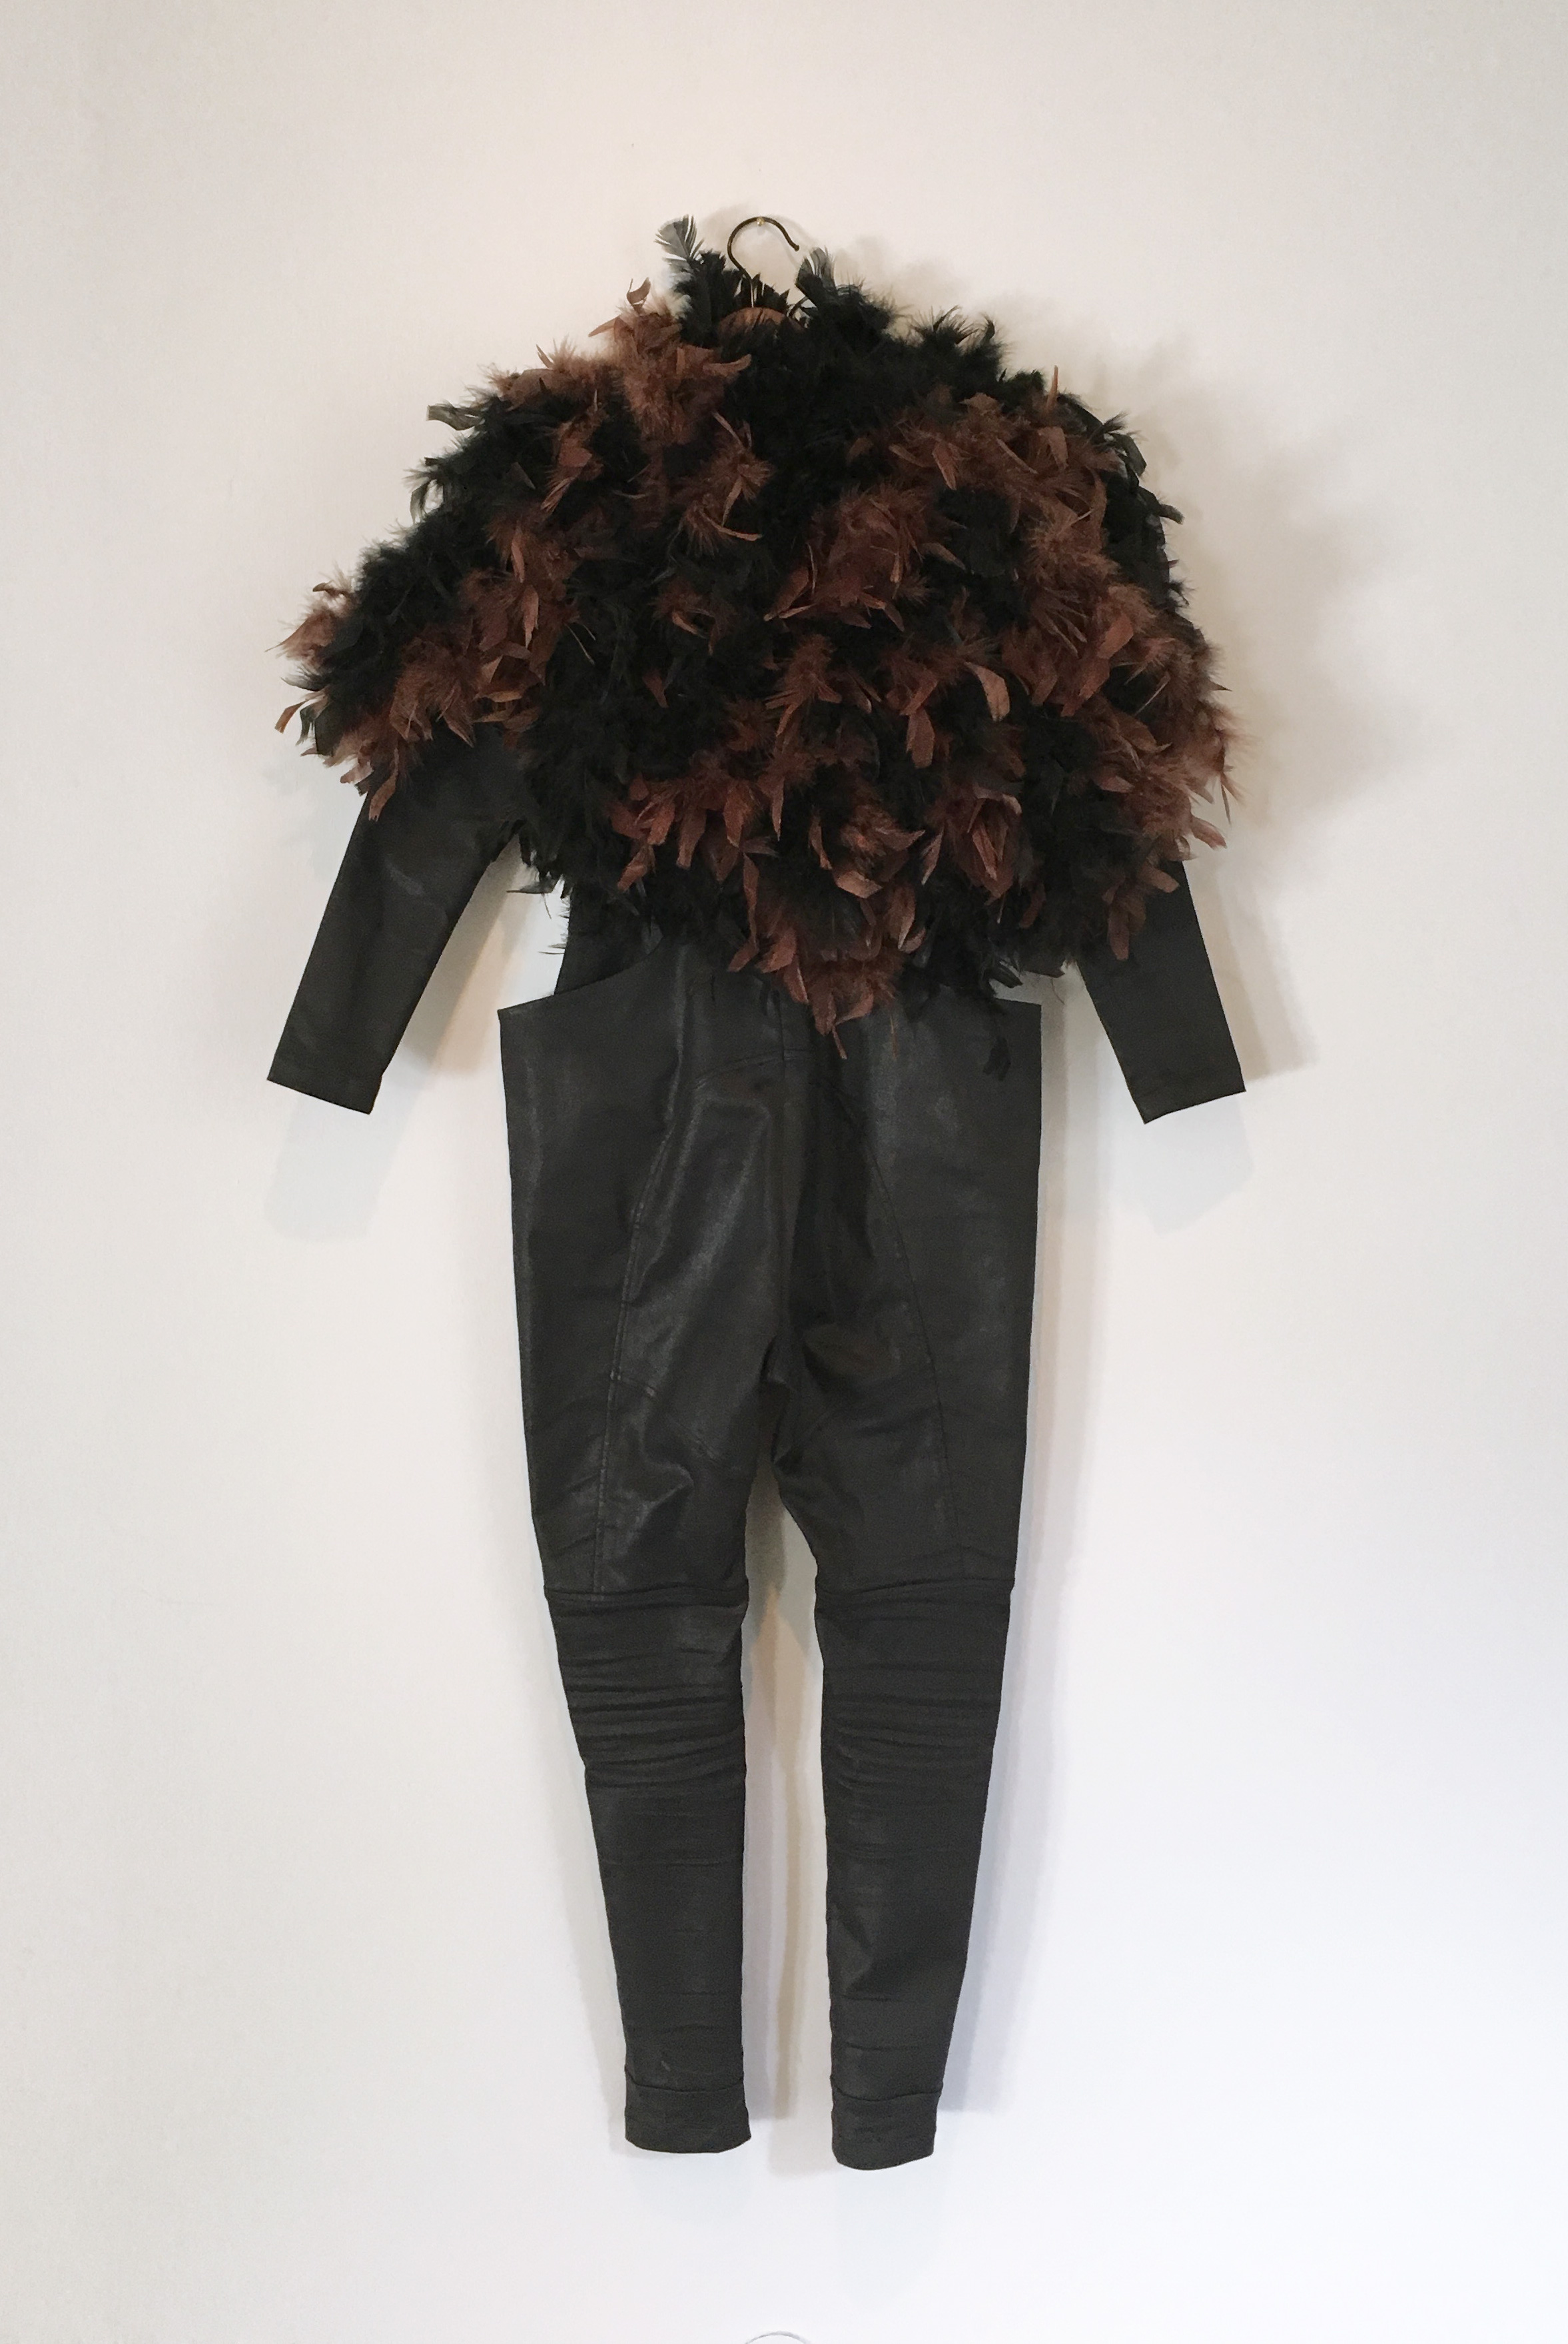 Galerie Barbara Thumm \ María José Arjona \ Suit to Fly (2015)